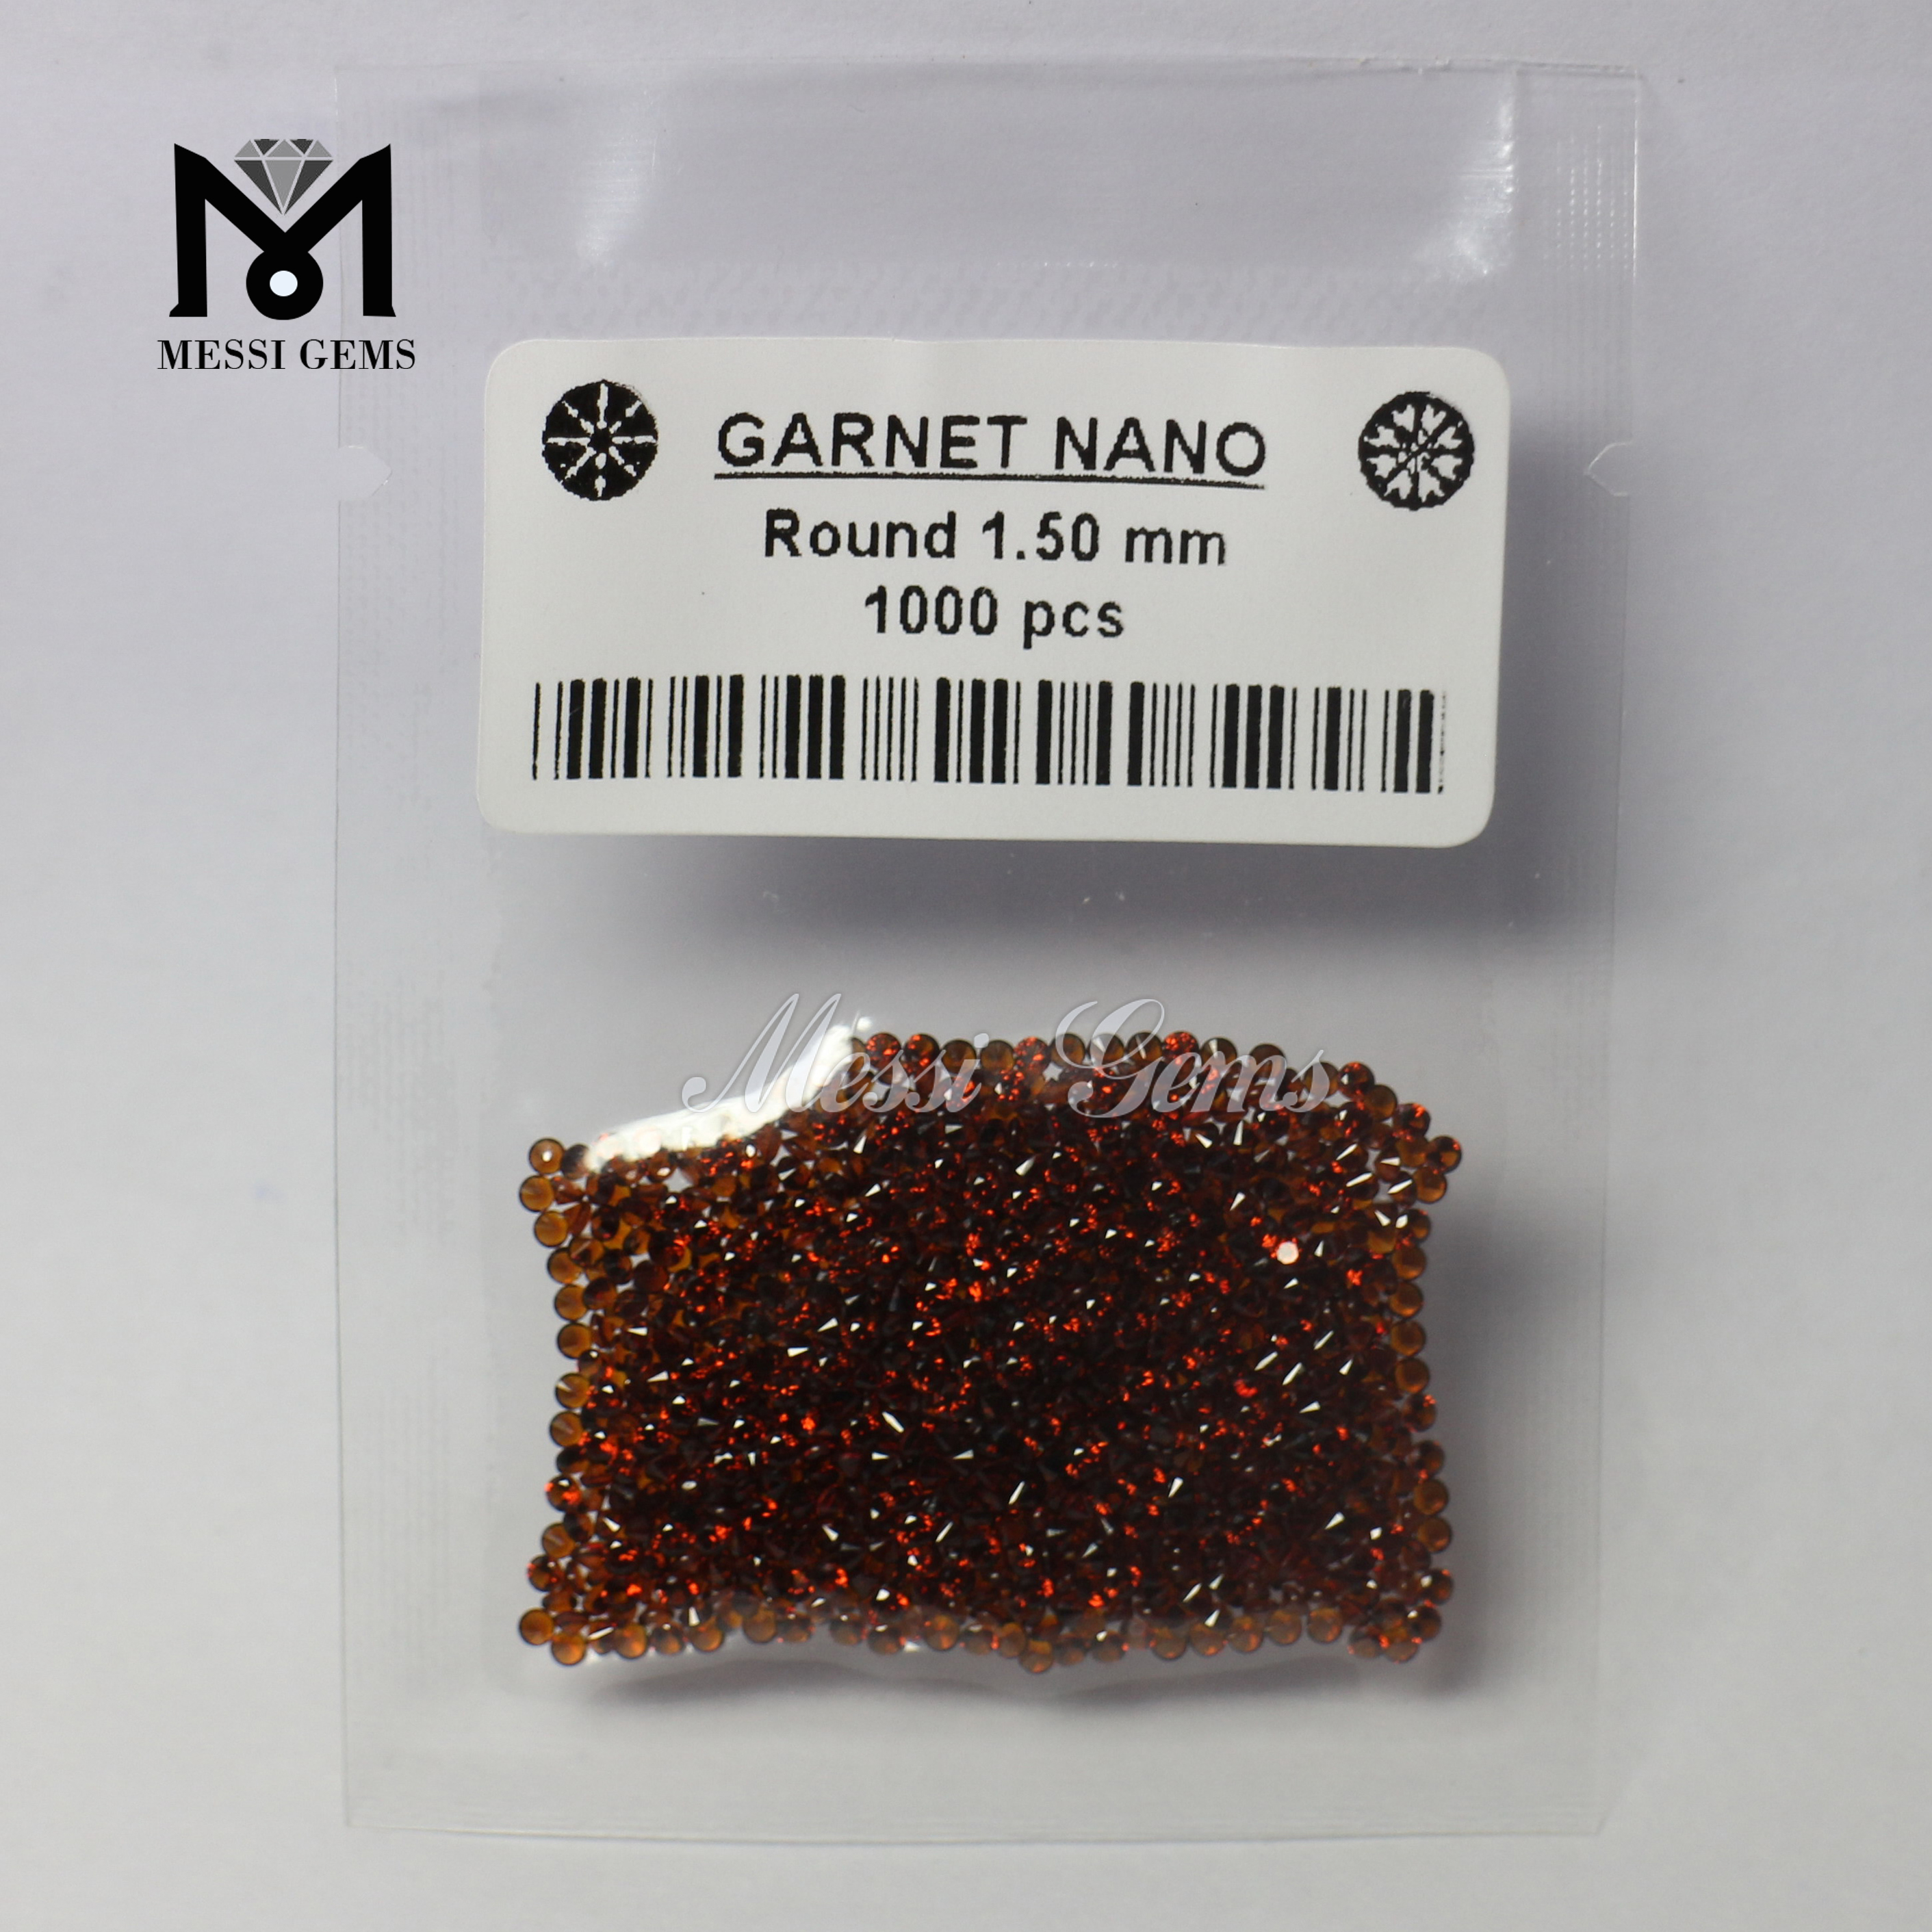 Calidum sale circum Garnet Cera iactantia Nanogems